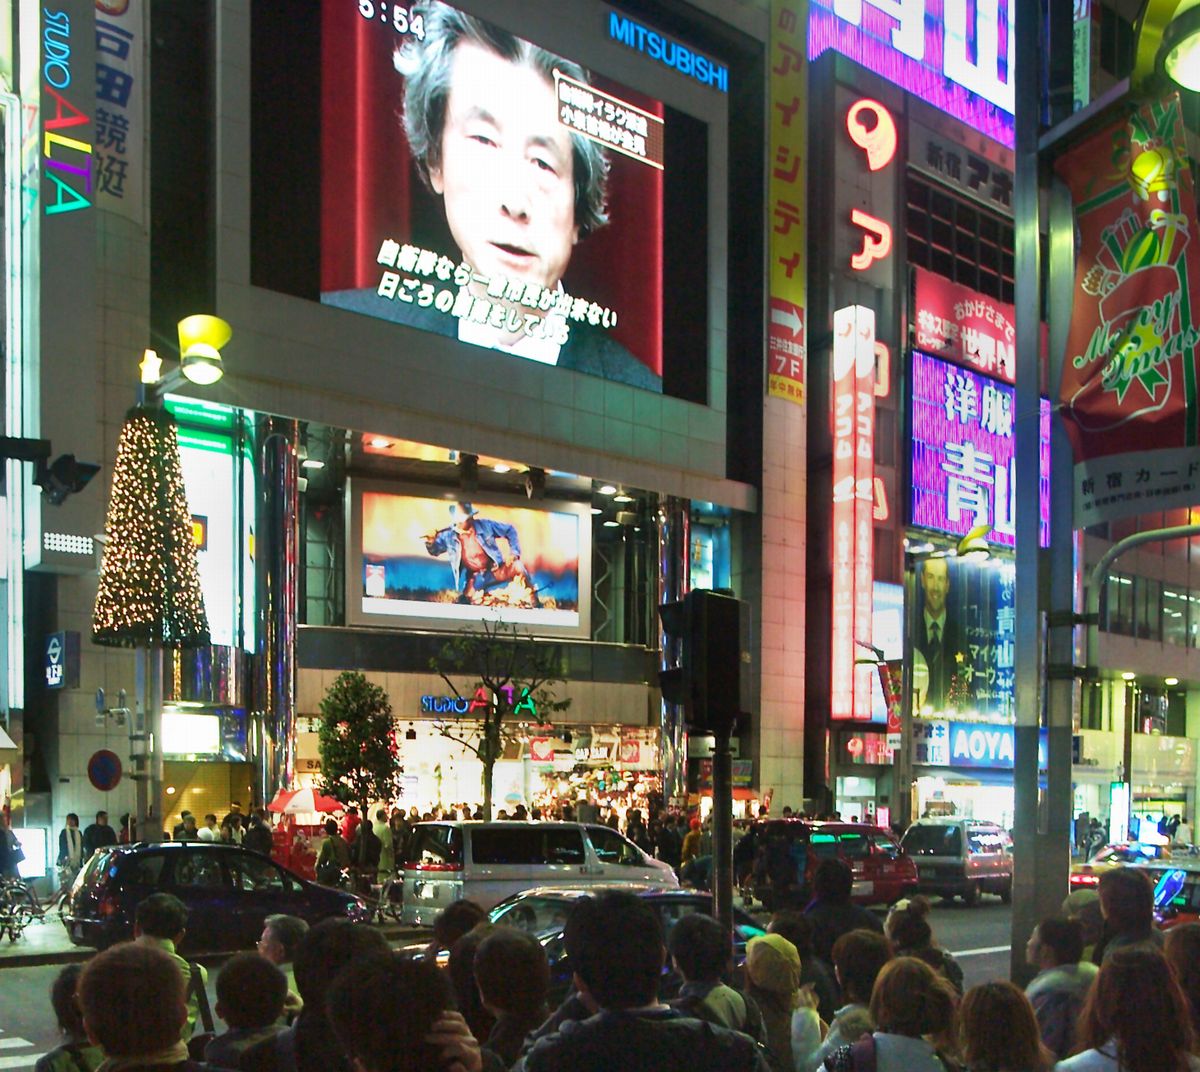 写真・図版 : 新宿駅前の大型ビジョンに、自衛隊のイラク派遣を決めた小泉純一郎首相の会見の様子が映し出された＝2003年12月9日